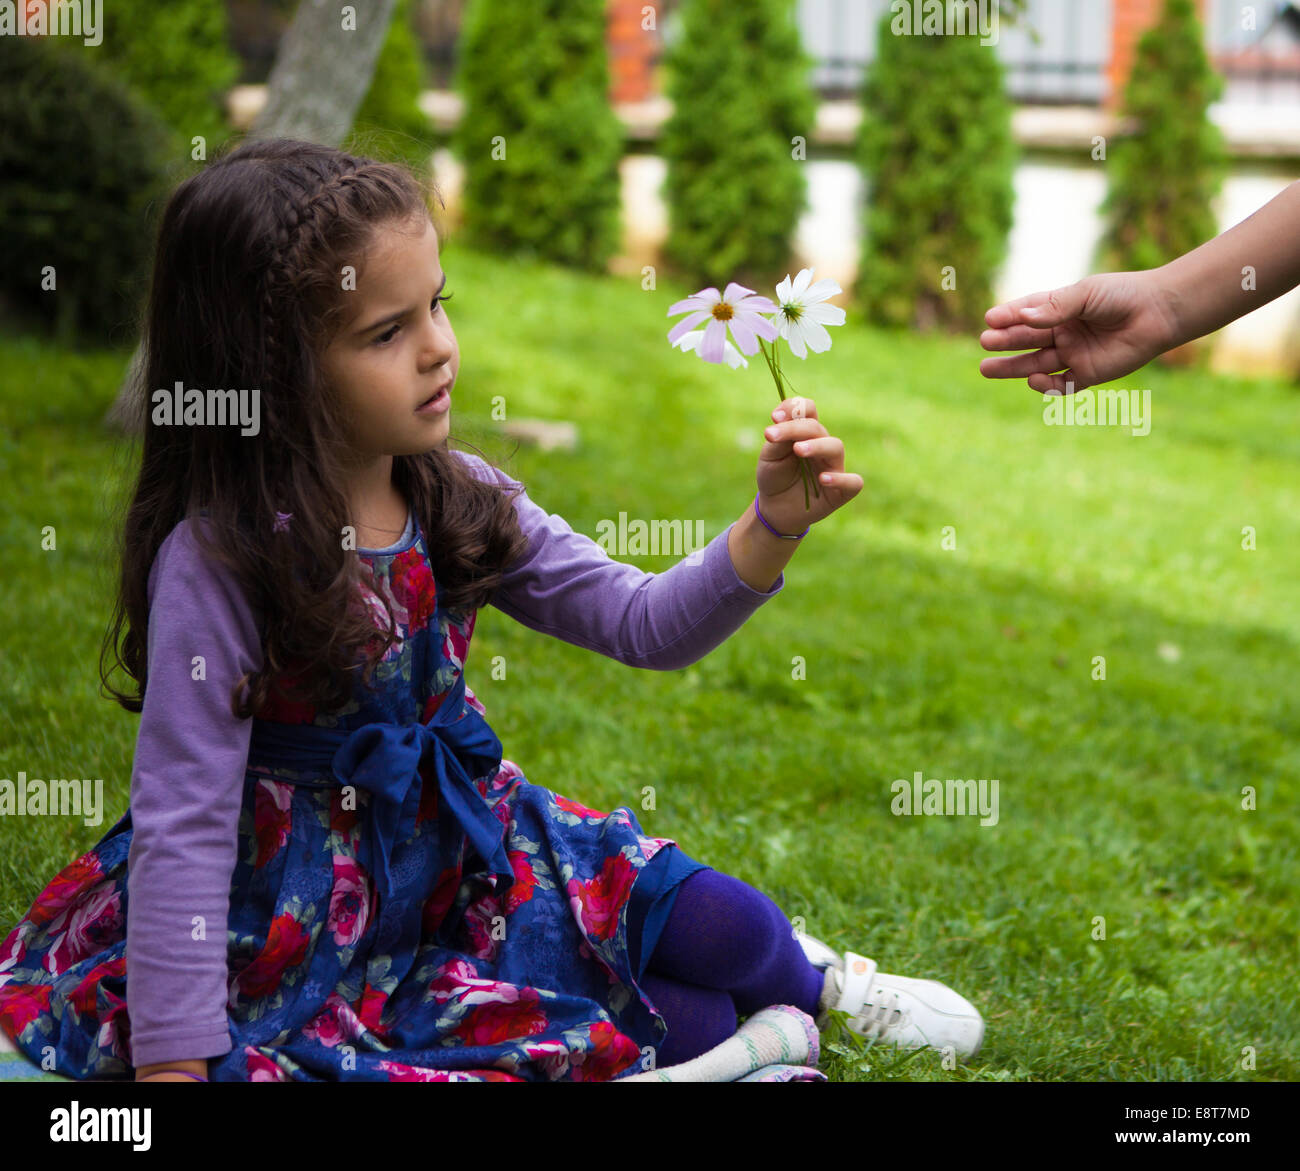 La mano del niño regalar flores a su amiga Foto de stock